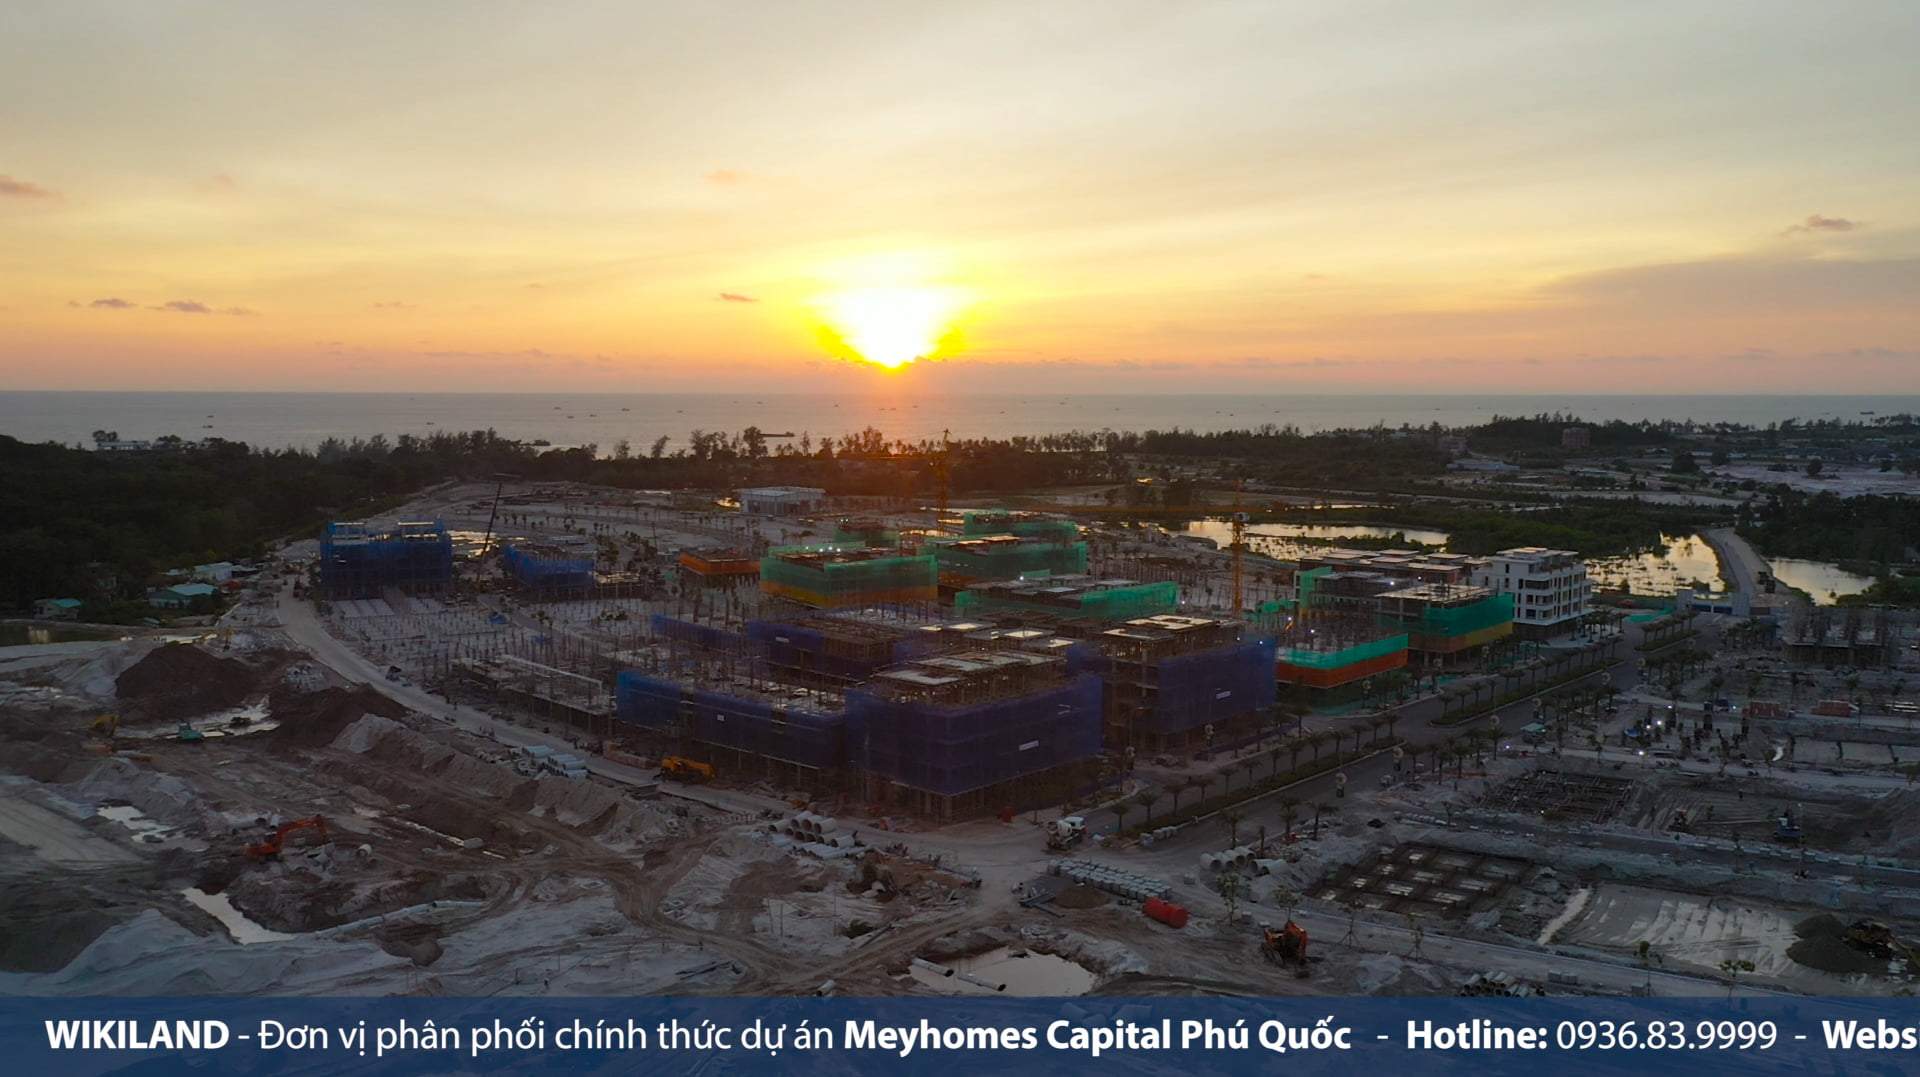 Cập nhật tiến độ dự án Meyhomes Capital Phú Quốc 26/06/2022